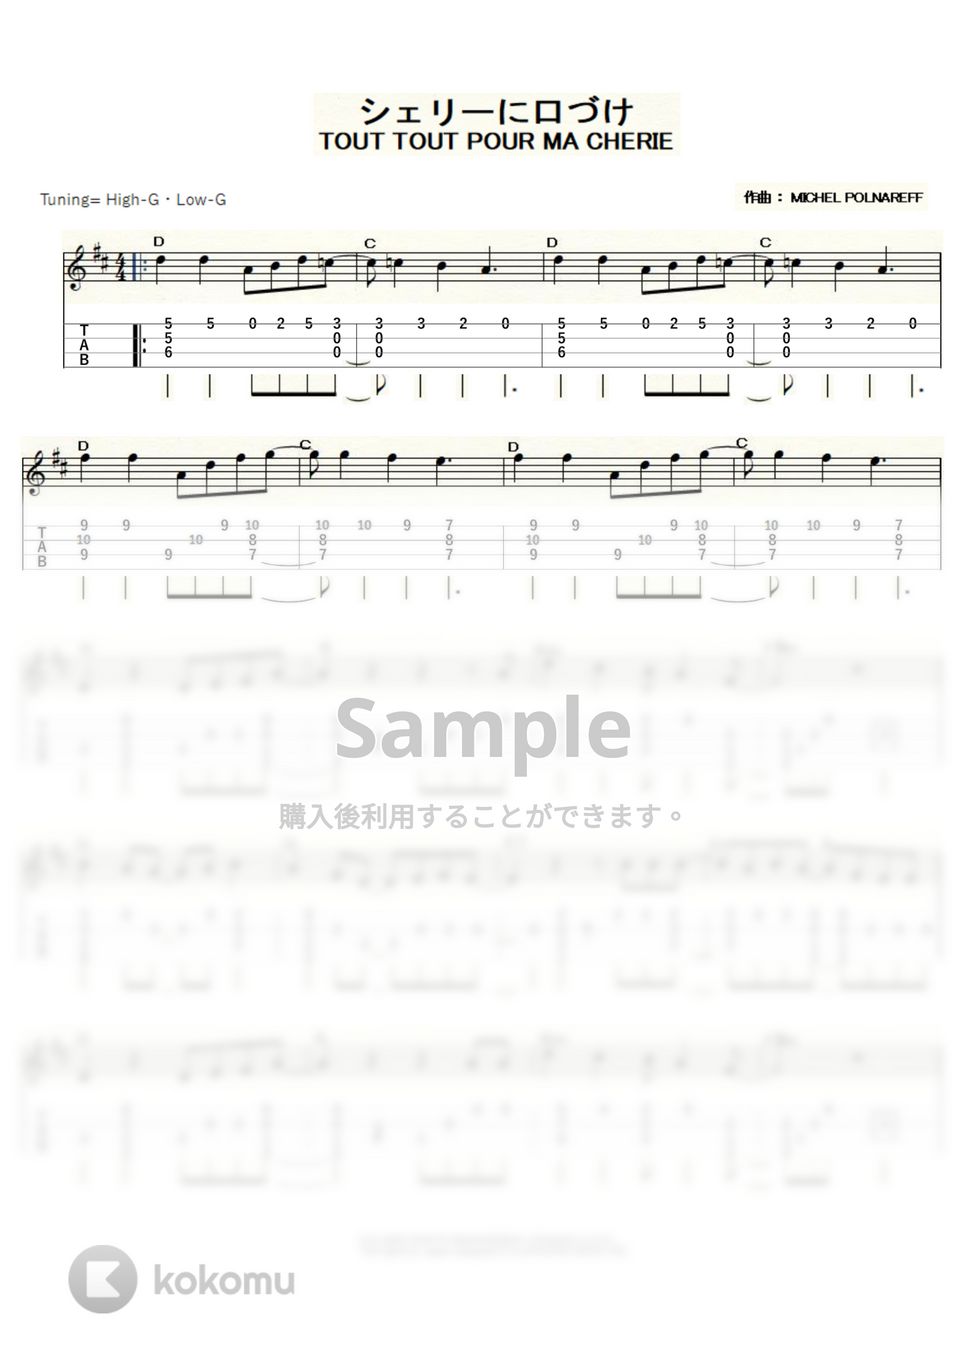 ミッシェル・ポルナレフ - シェリーに口づけ (ｳｸﾚﾚｿﾛ / High-G・Low-G / 中級) by ukulelepapa